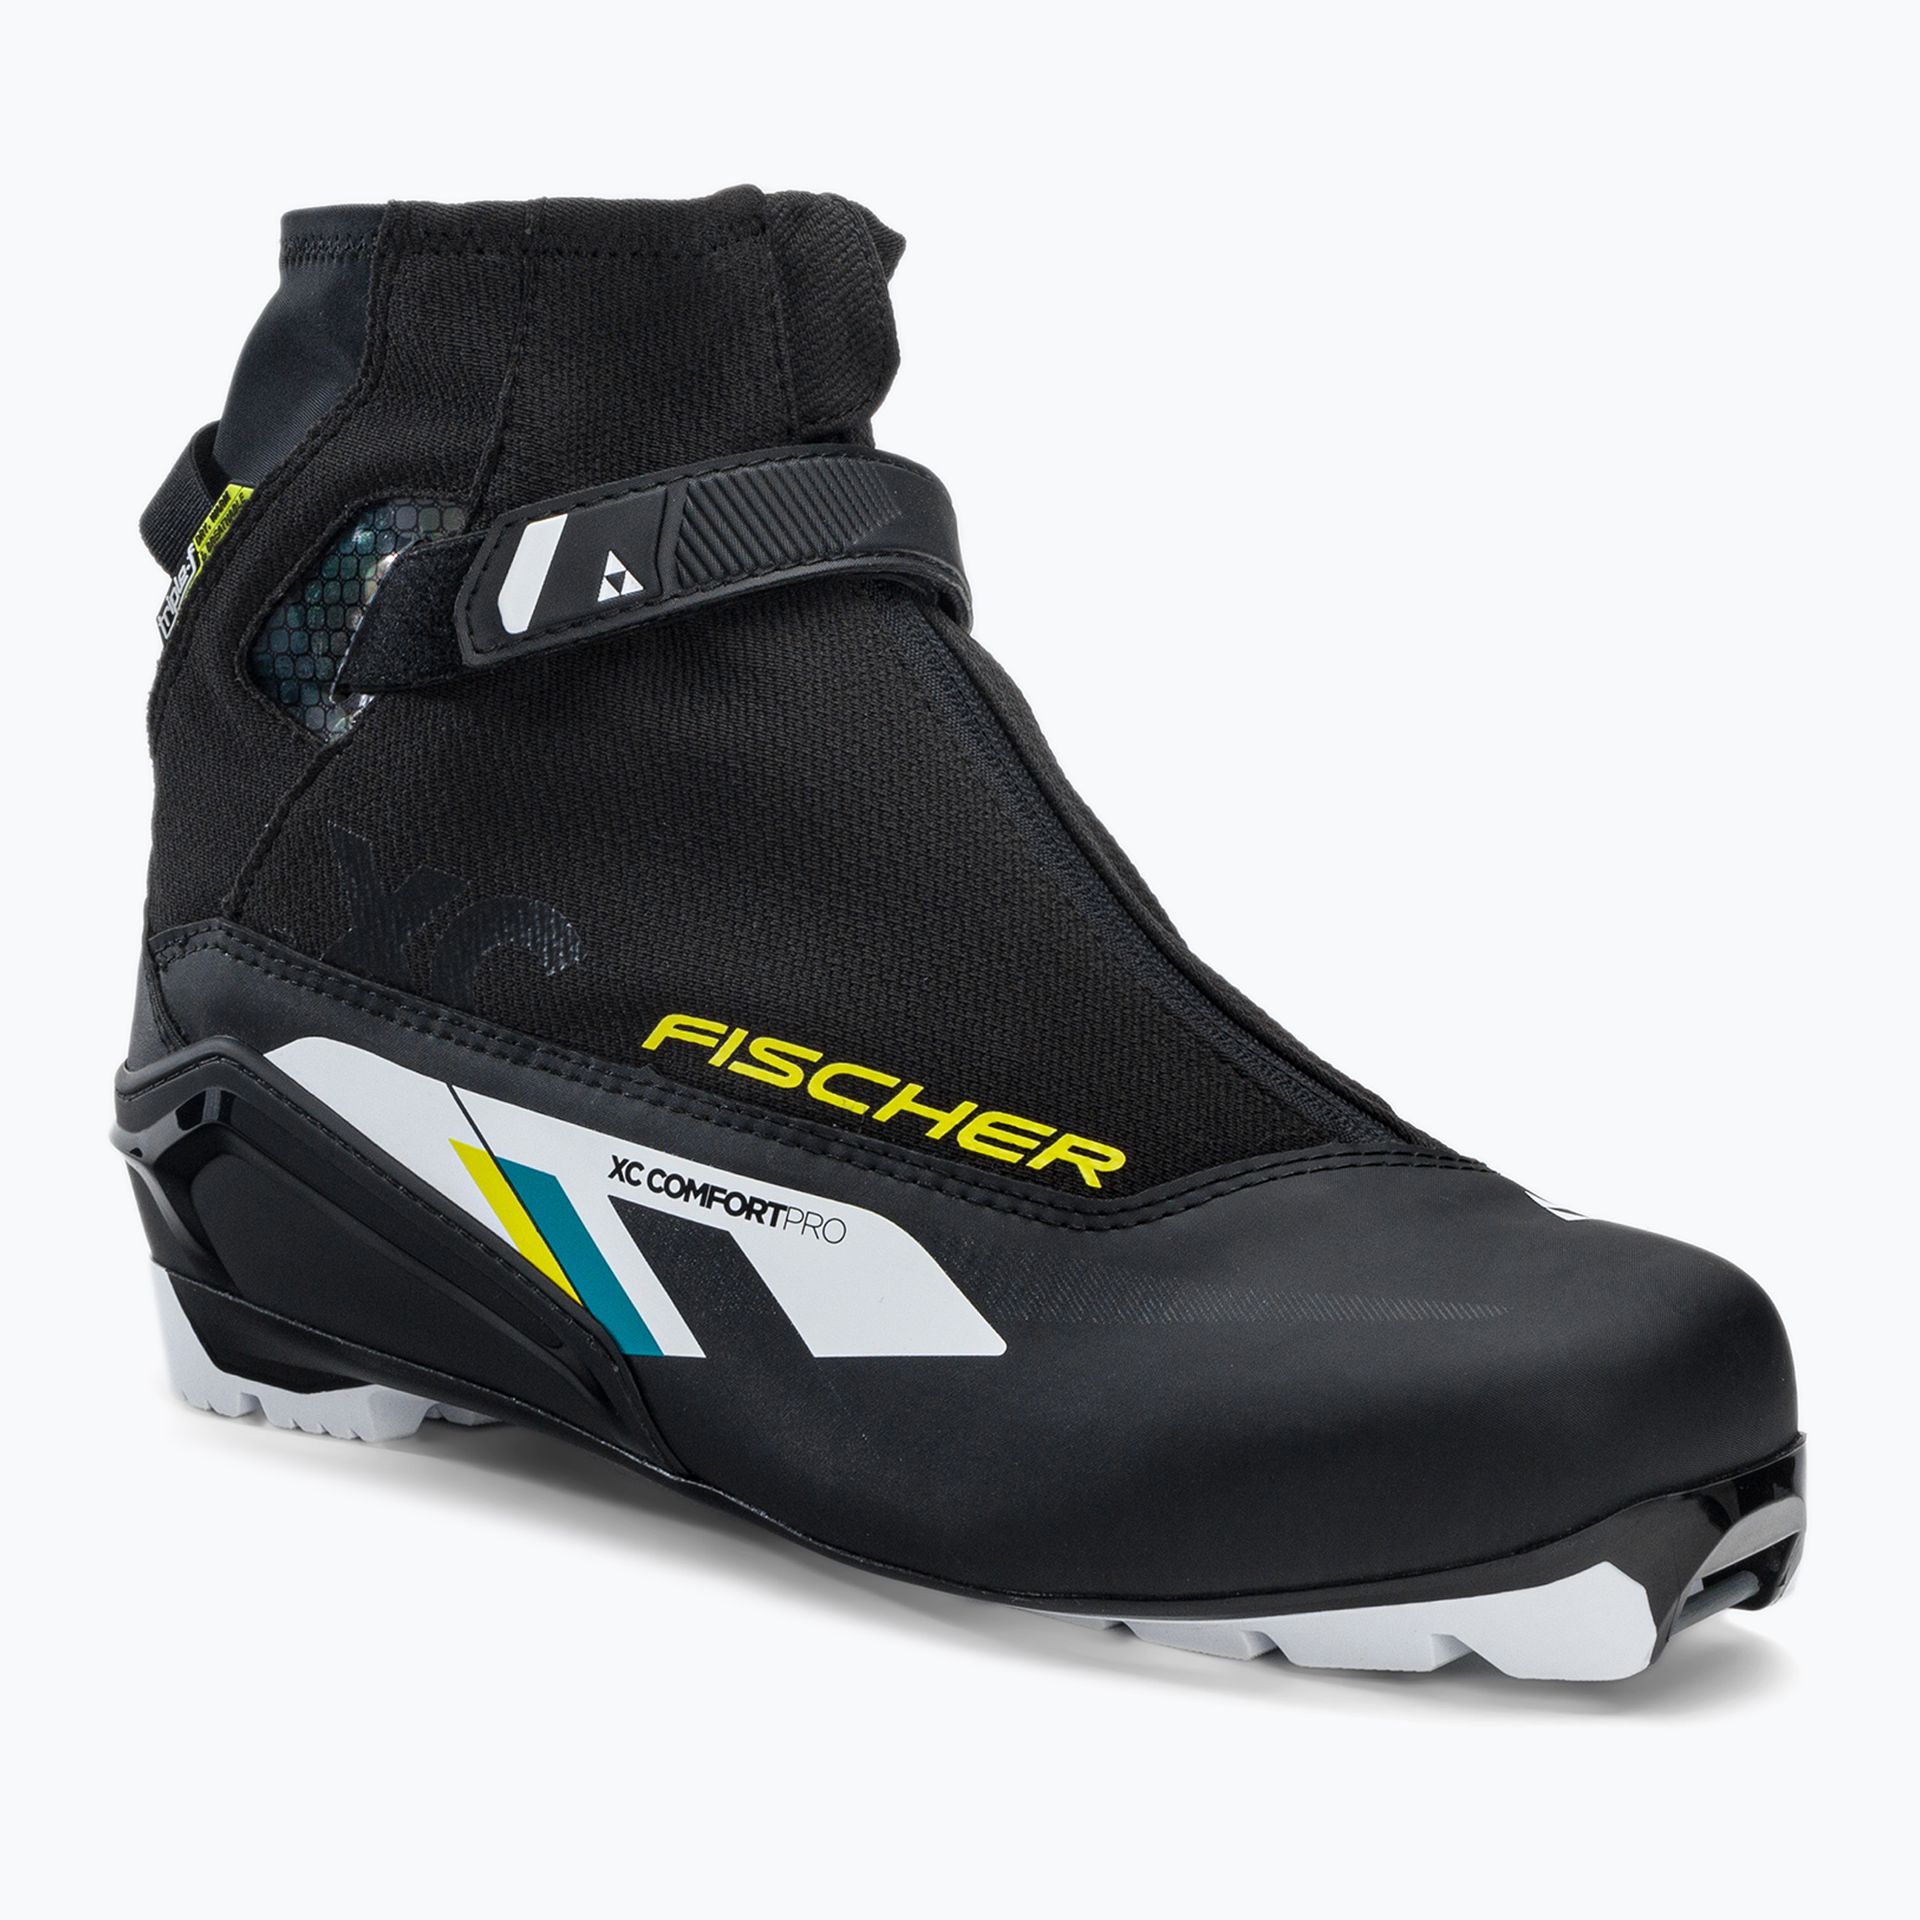 Buty narciarskie biegowe Fischer XC Comfort Pro czarno-żółte S20920  45 eu